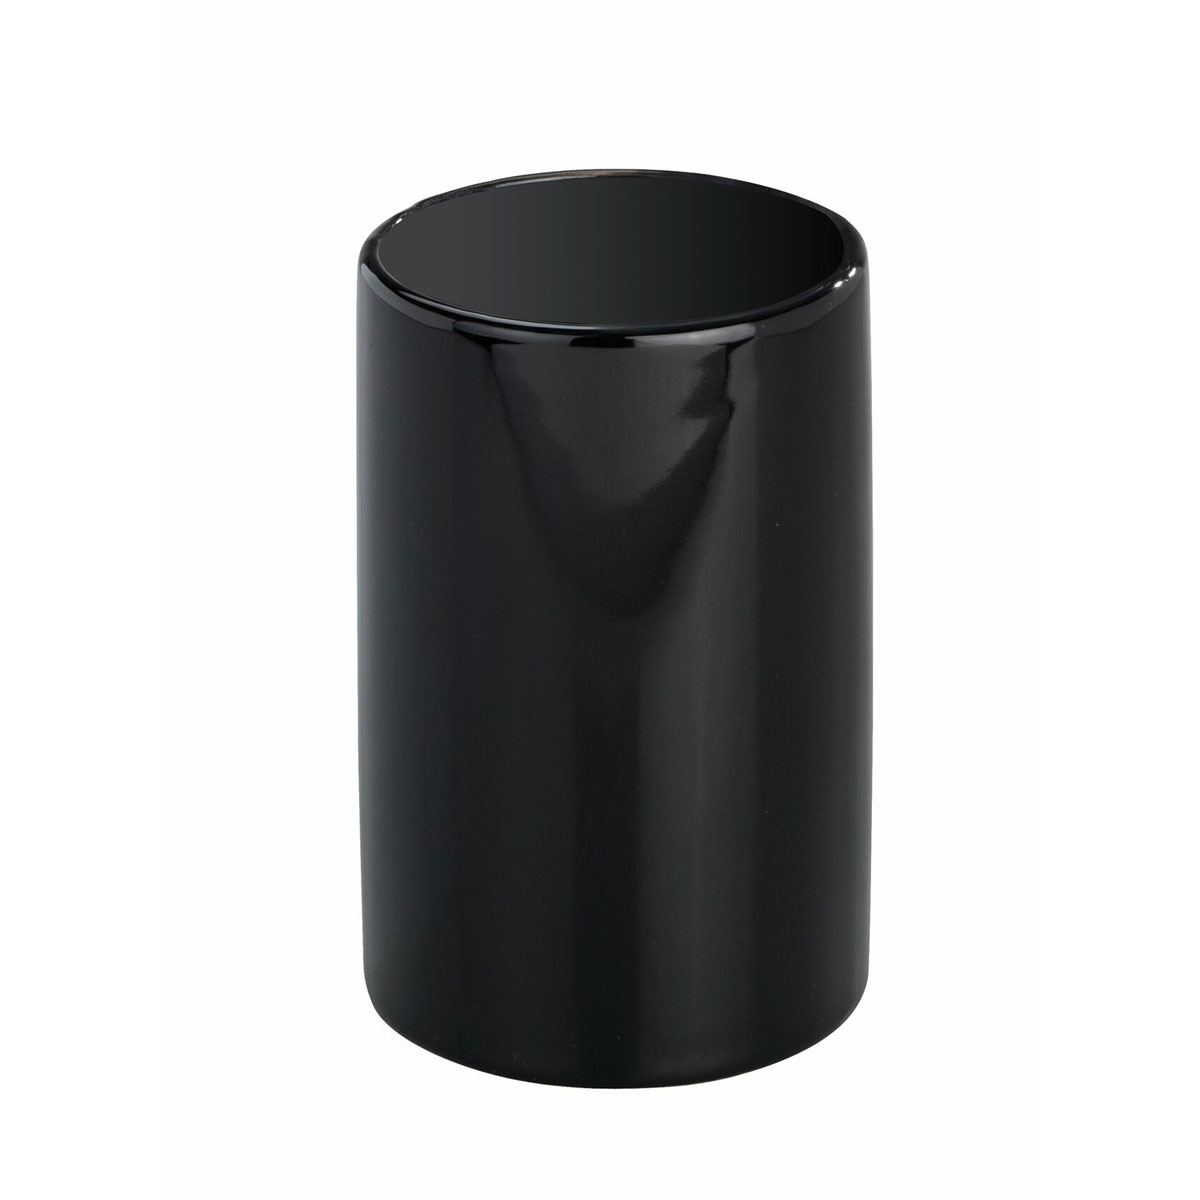 Wenko Bad-Accessoire-Set Polaris Black 3-teilig Keramik | Schwarz | 514489